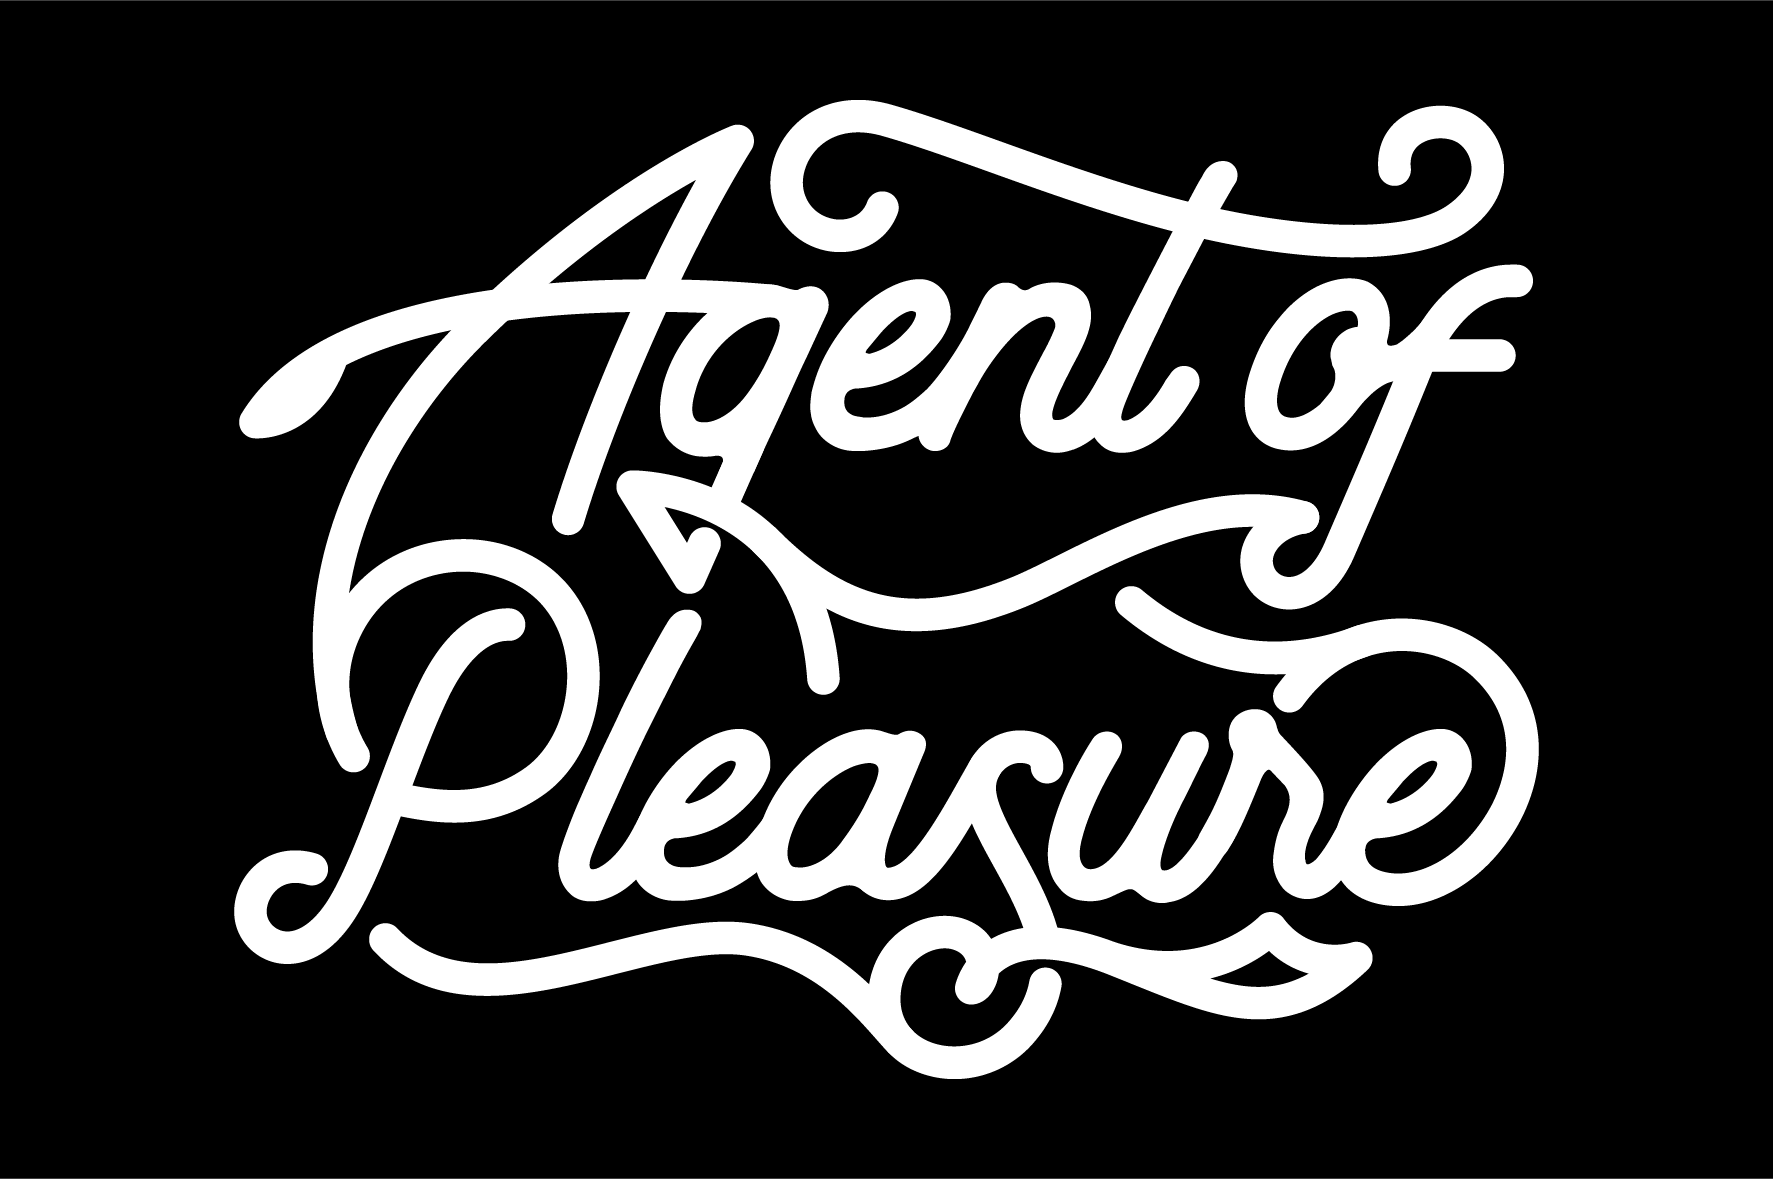 Agent of Pleasure